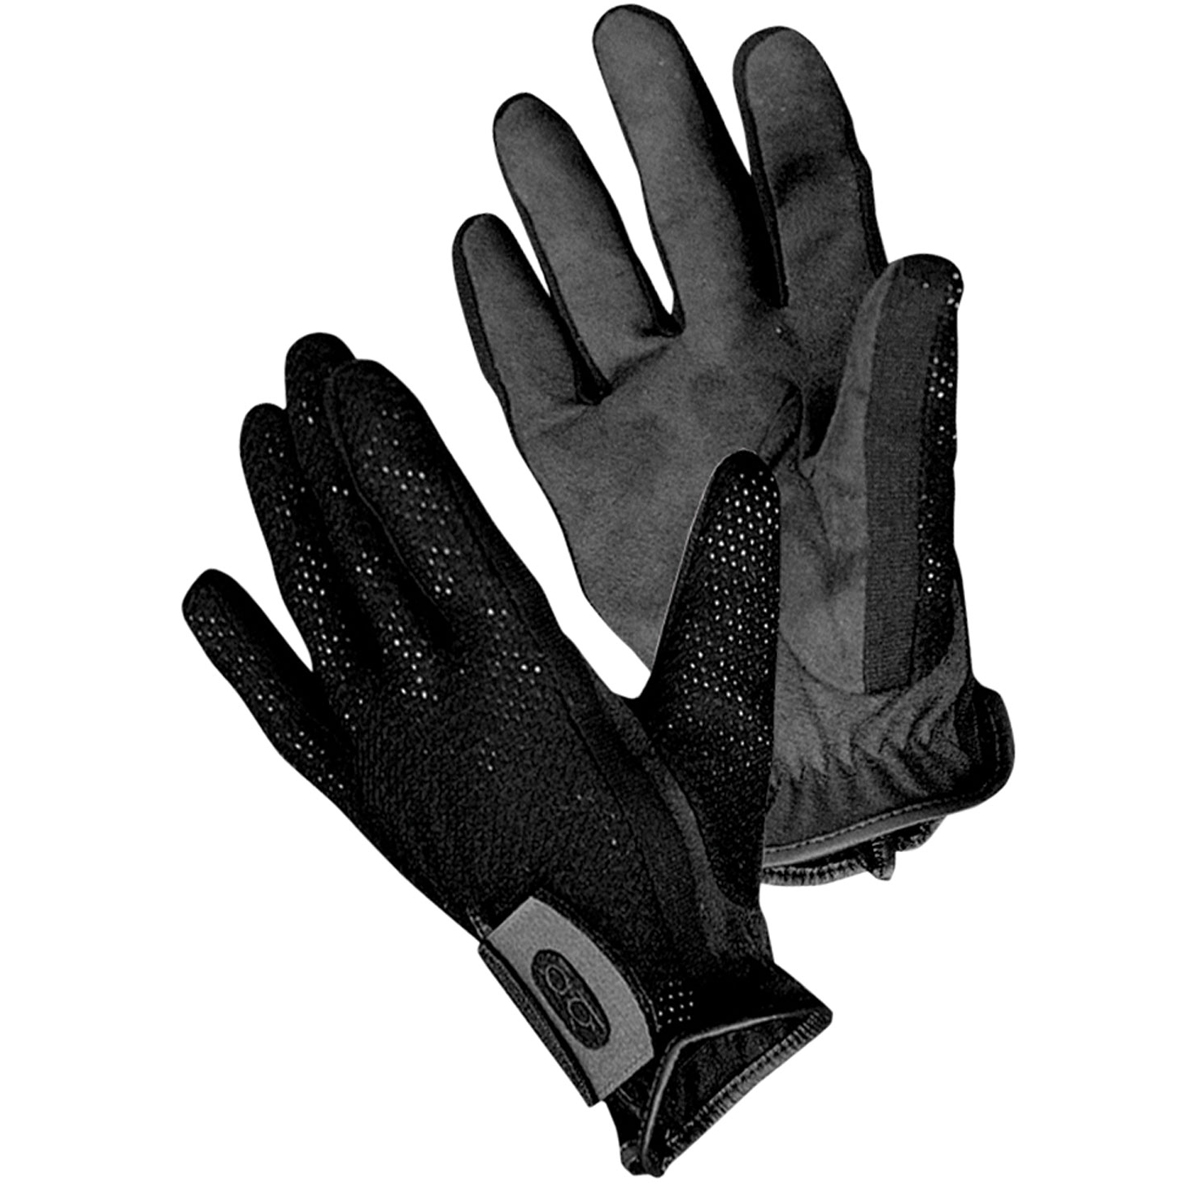 Bob Allen Shotgunner Shooting Gloves, Black, Small